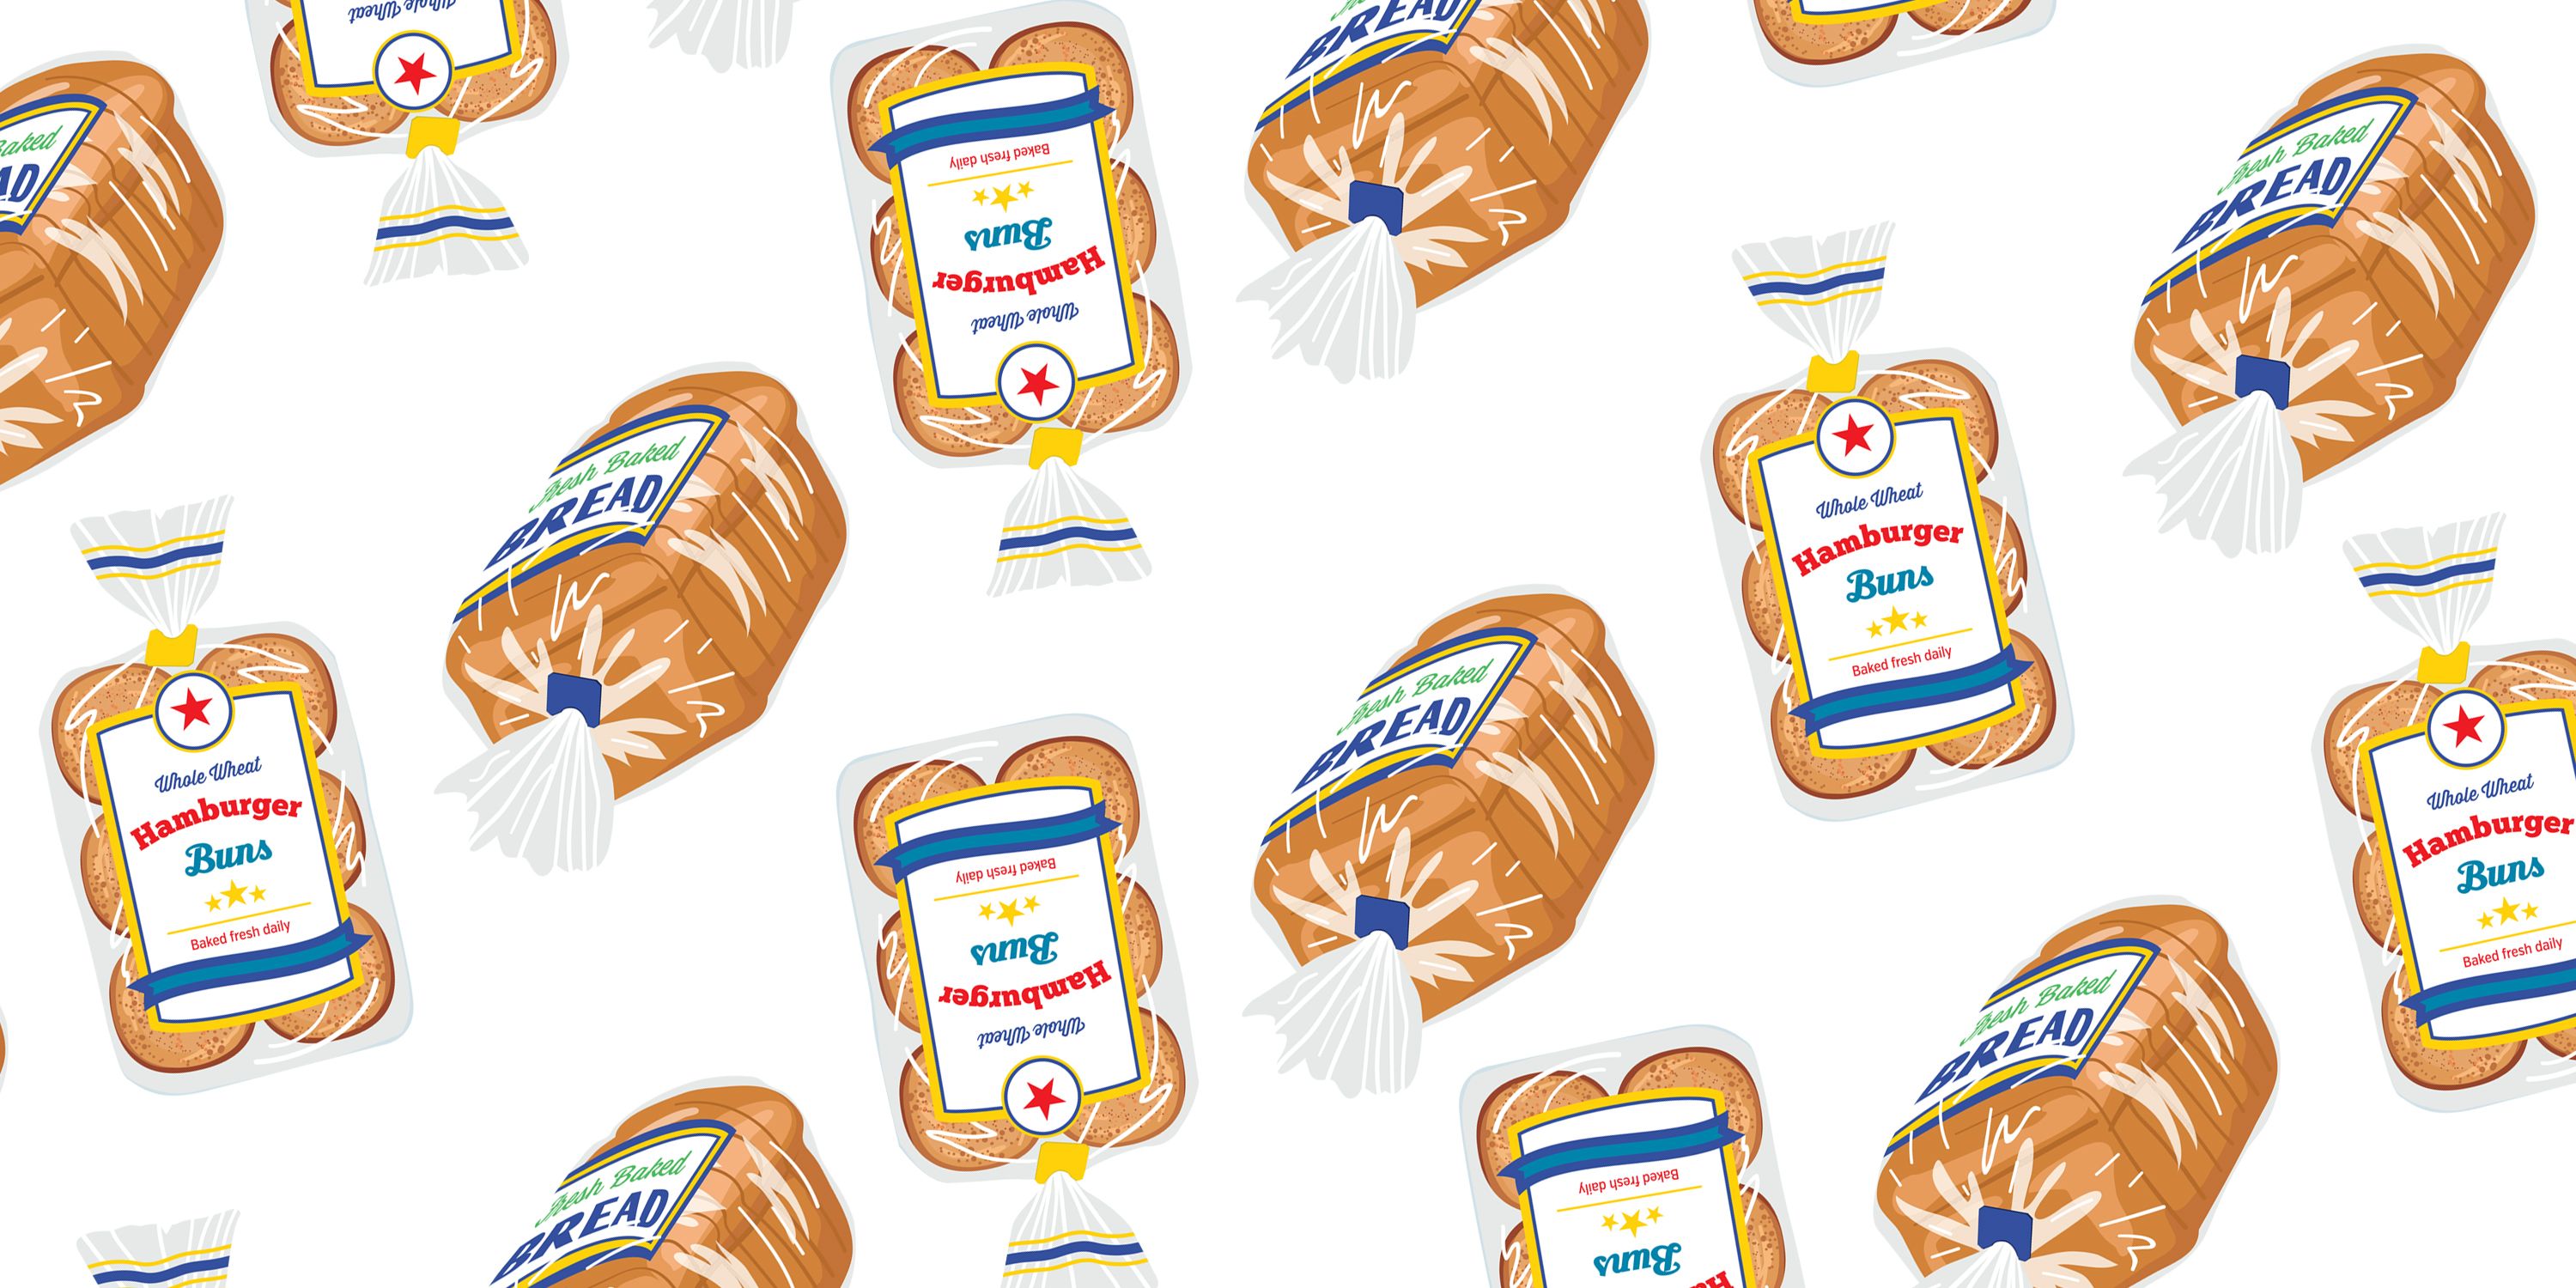 bread tag color code